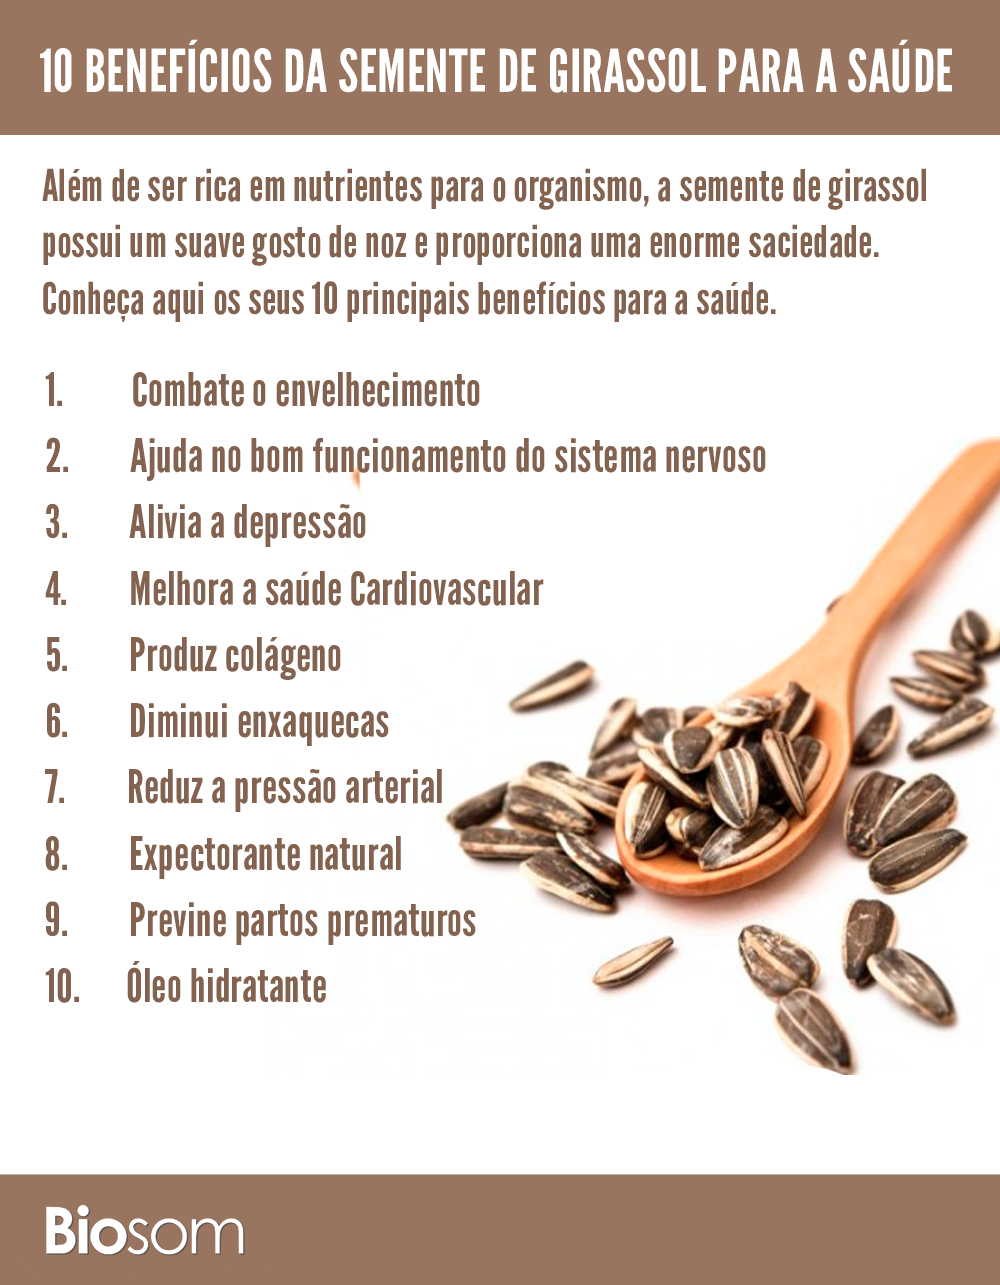 Os 10 beneficos da semente de girassol - Nutricoah